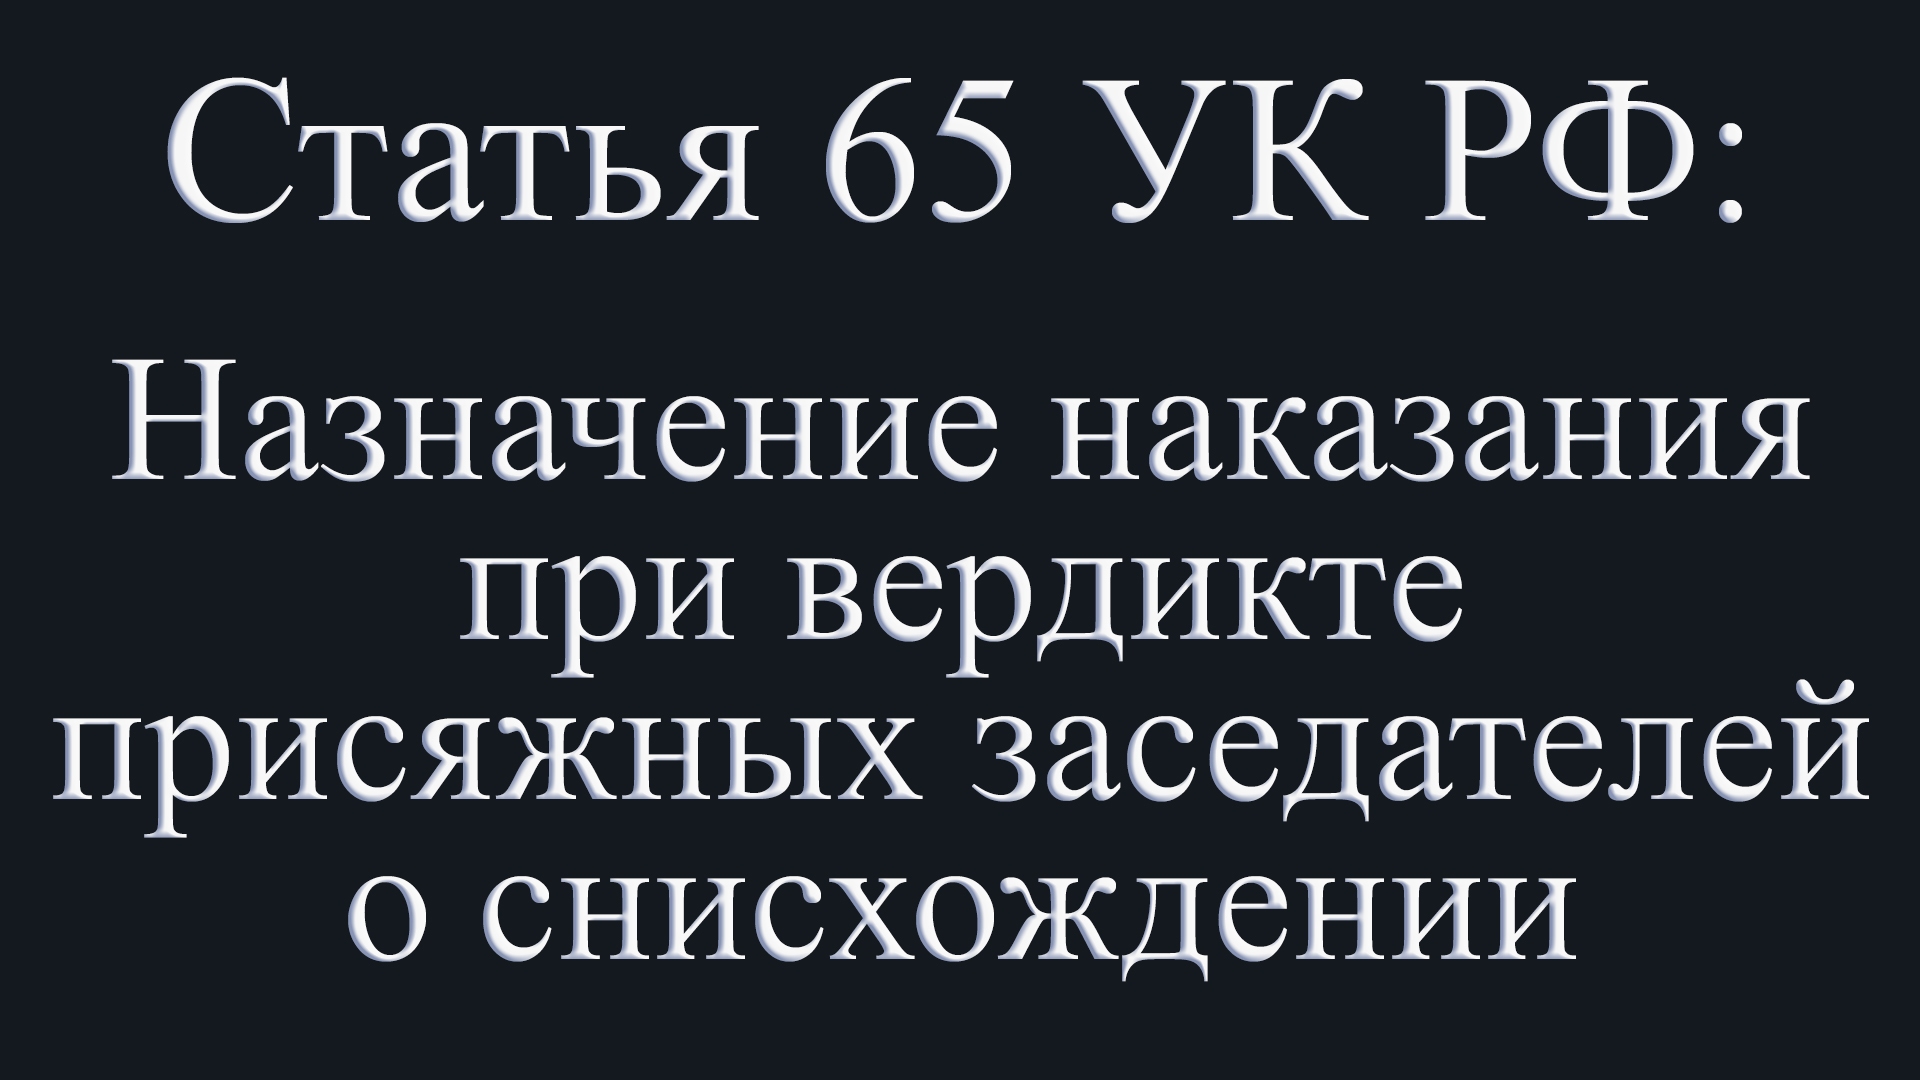 Статья 65 УК РФ: Назначение наказания при вердикте присяжных заседателей о снисхождении.